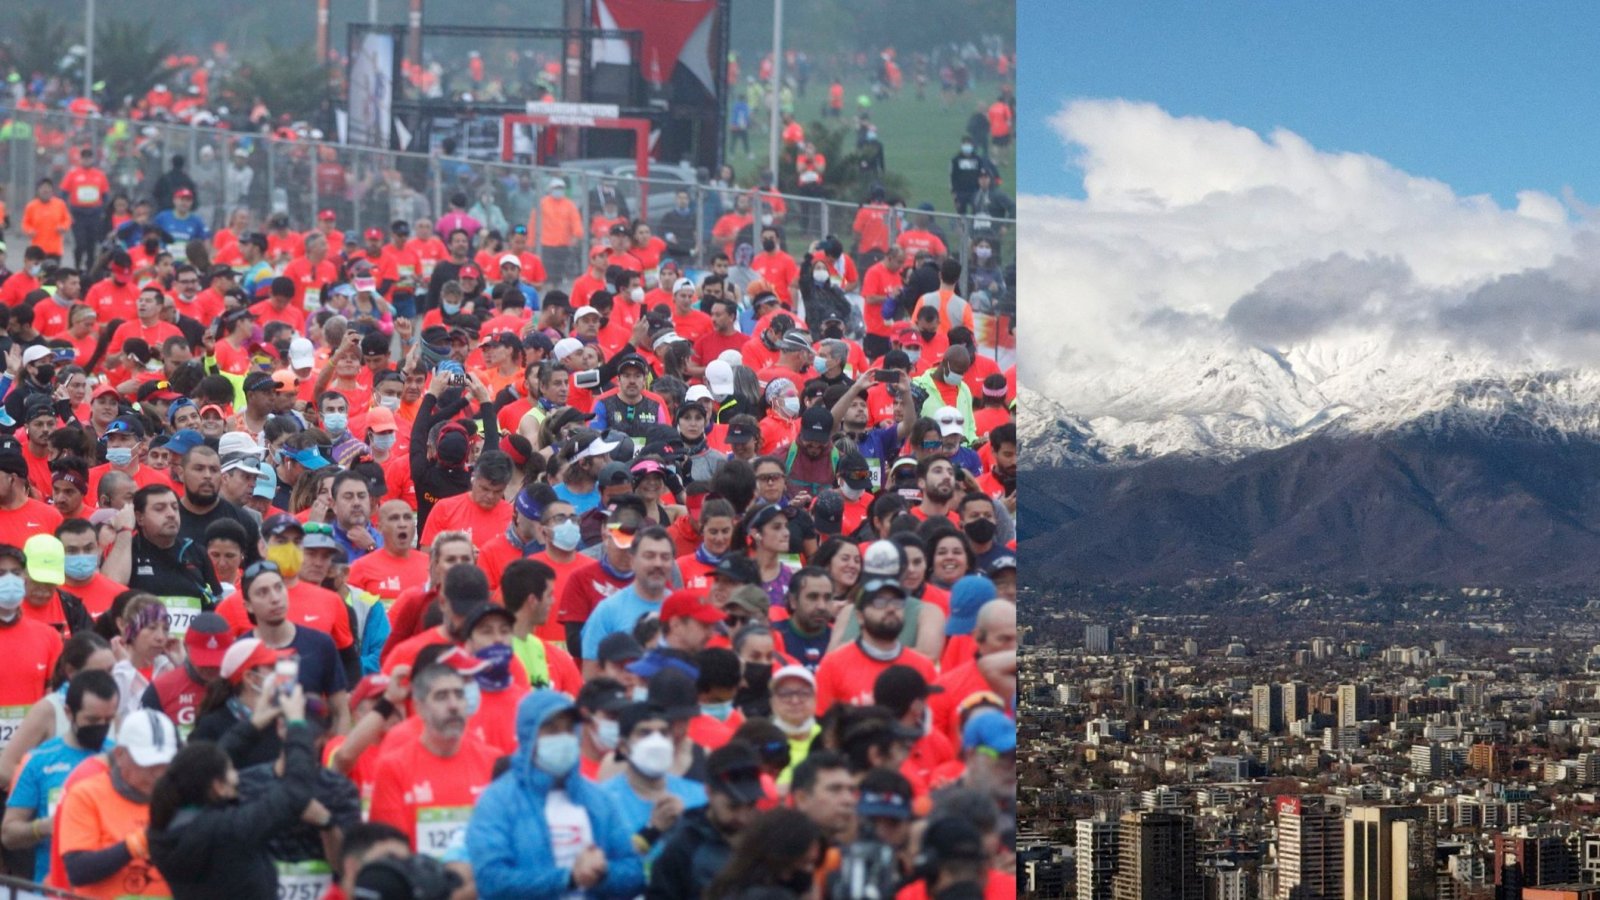 Fotos de la Maratón de Santiago y de la cordillera, vista desde Santiago.